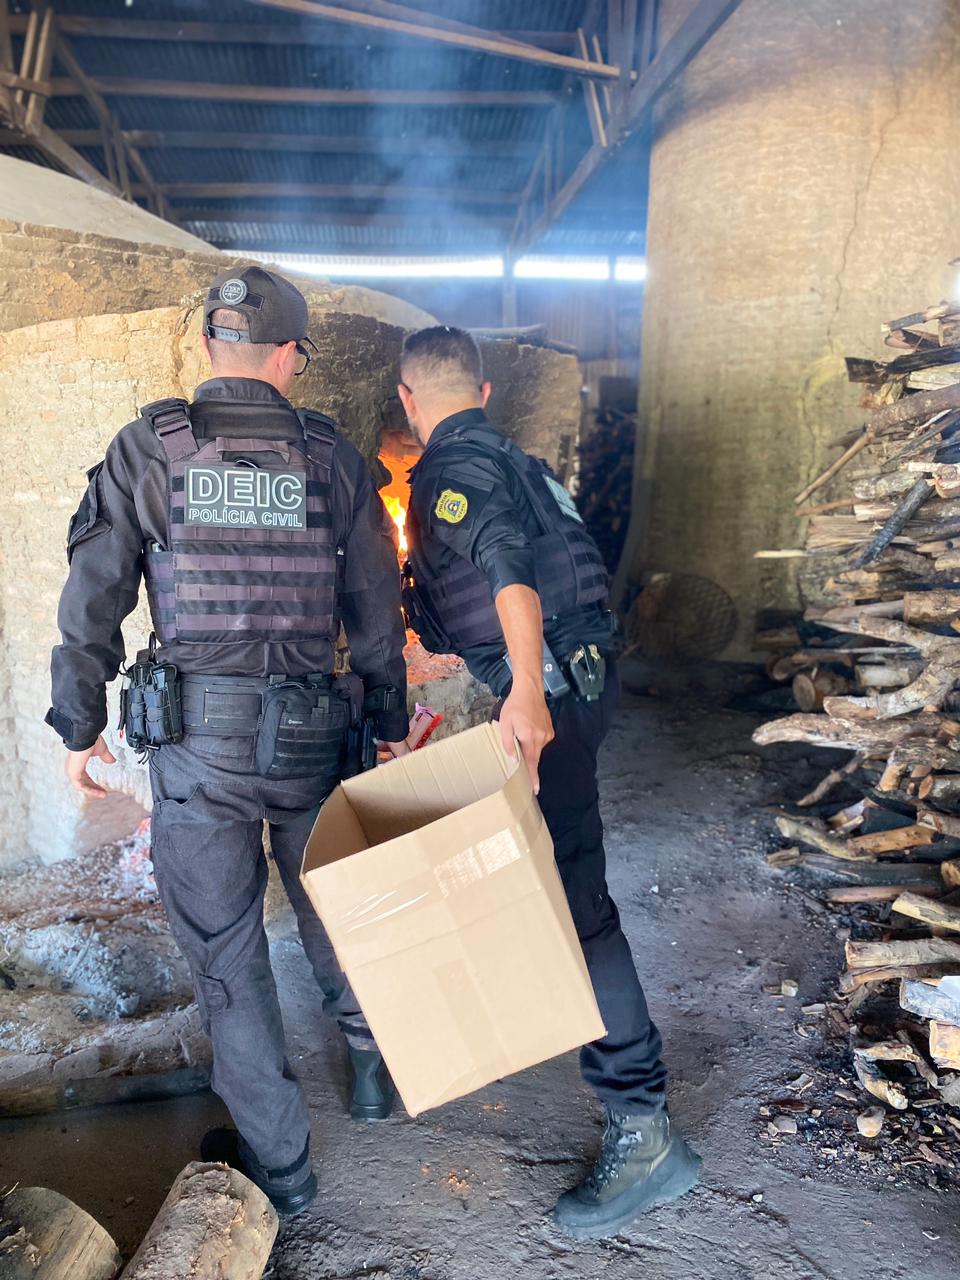 Polícia Civil incinera 61,5 kg de drogas em ação contra o tráfico no Tocantins